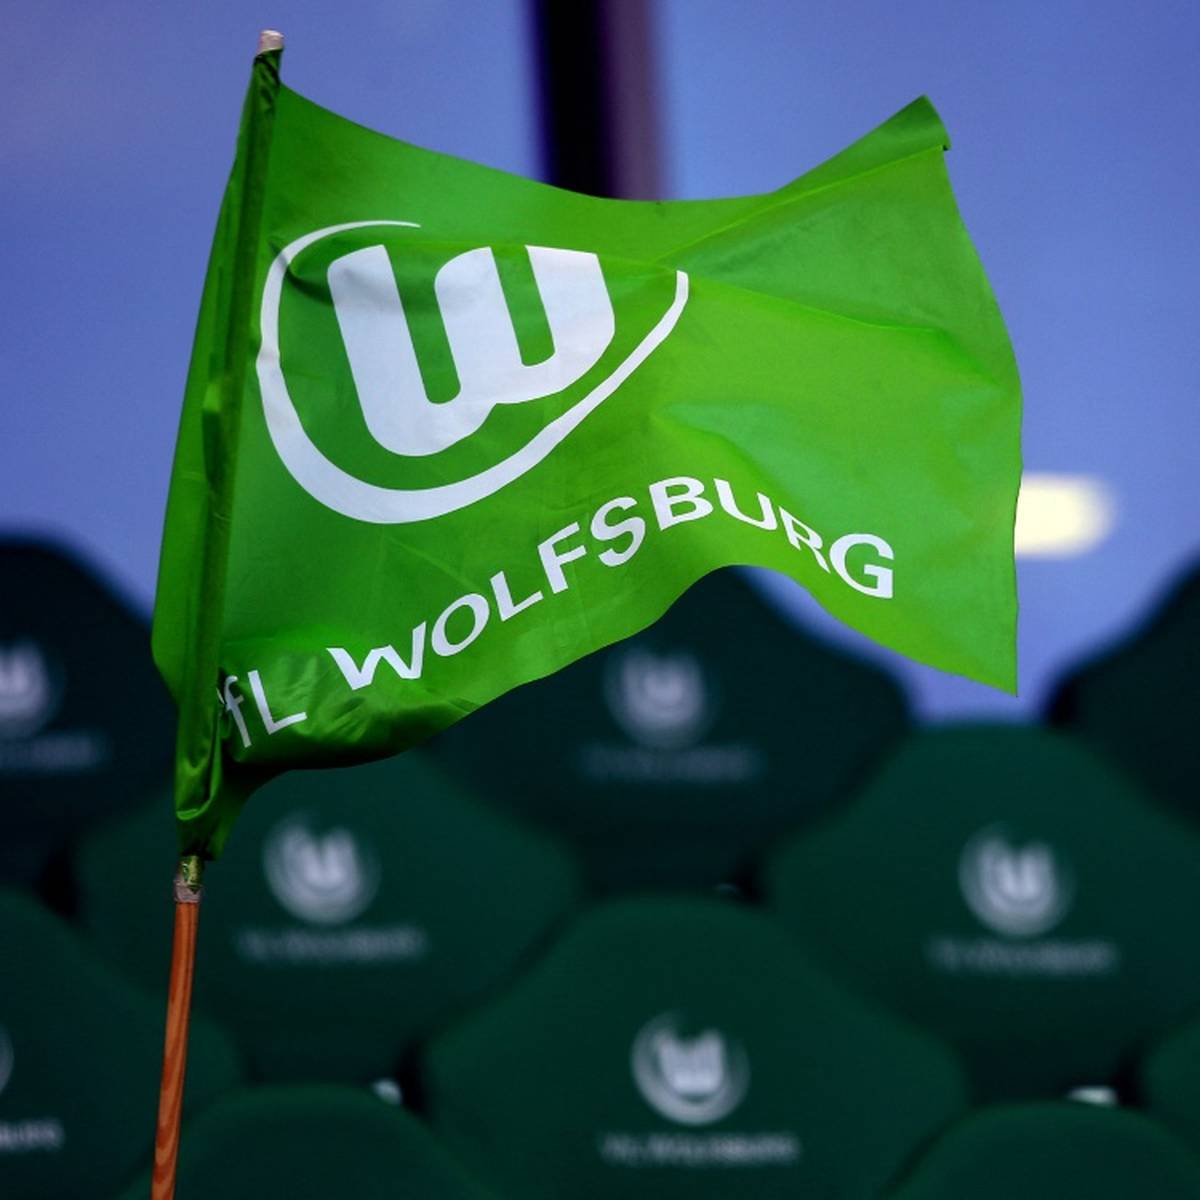 Der VfL Wolfsburg setzt beim Thema Umweltschutz auf mehr Transparenz.